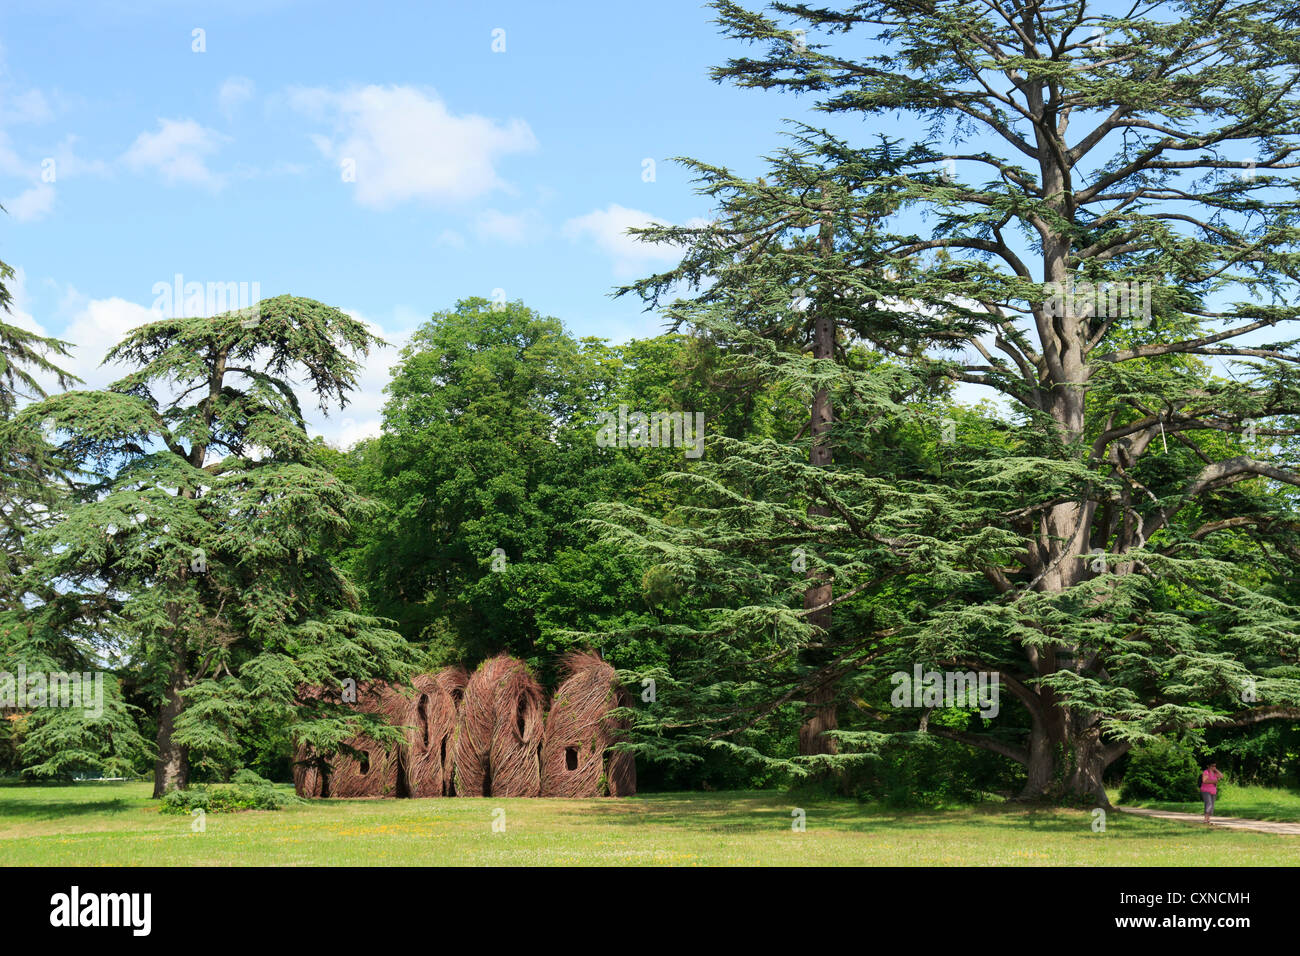 Festival internazionale dei giardini di Chaumont-sur-loire 2012, opera da Patrick Dougherty nel castello parc nel 2012 Foto Stock